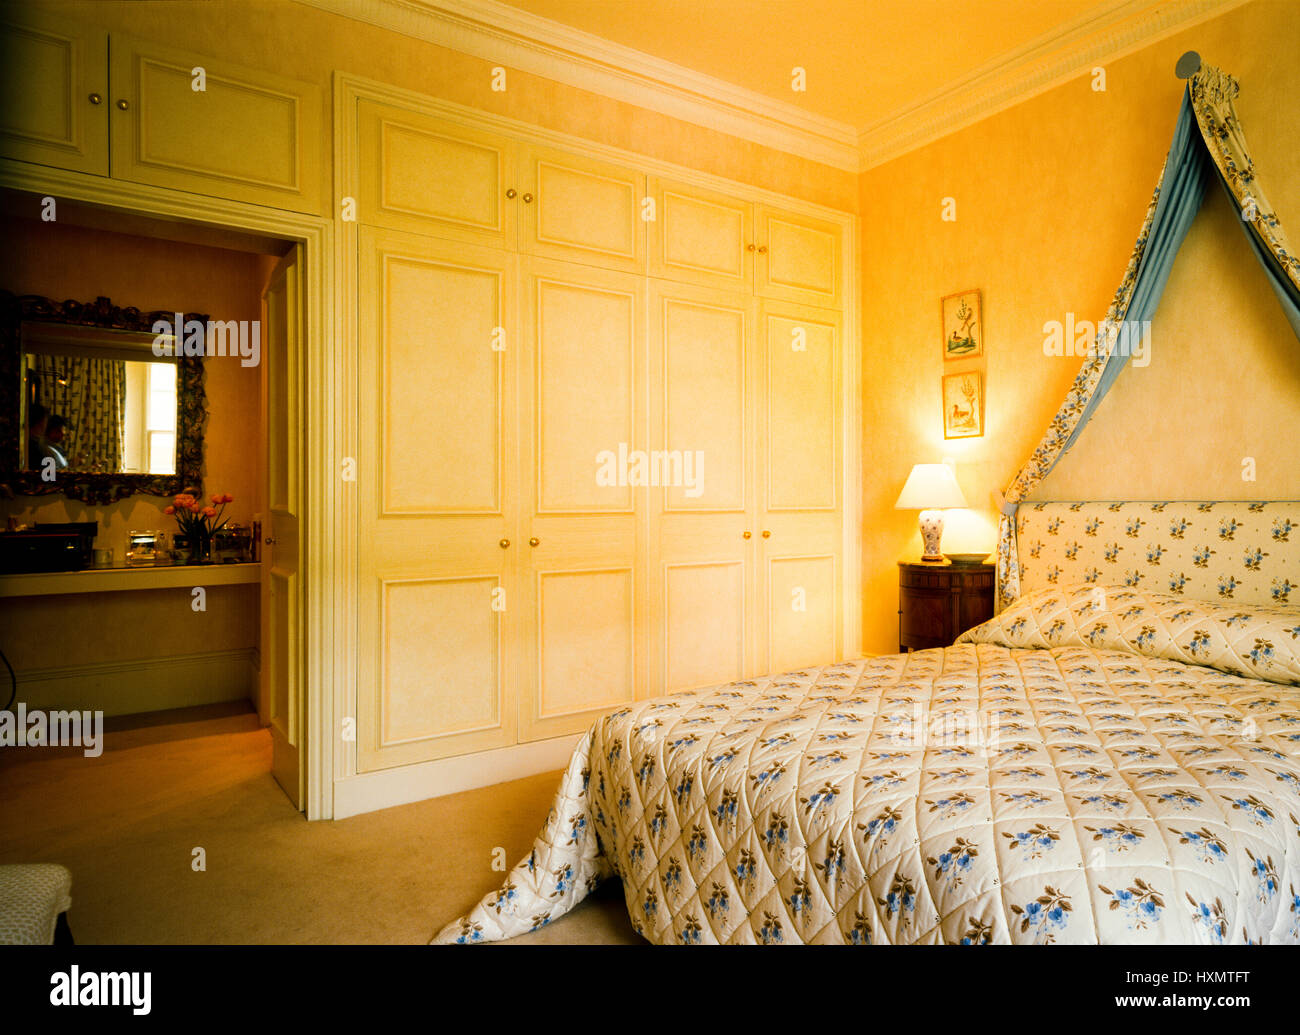 Retro style bedroom. Stock Photo